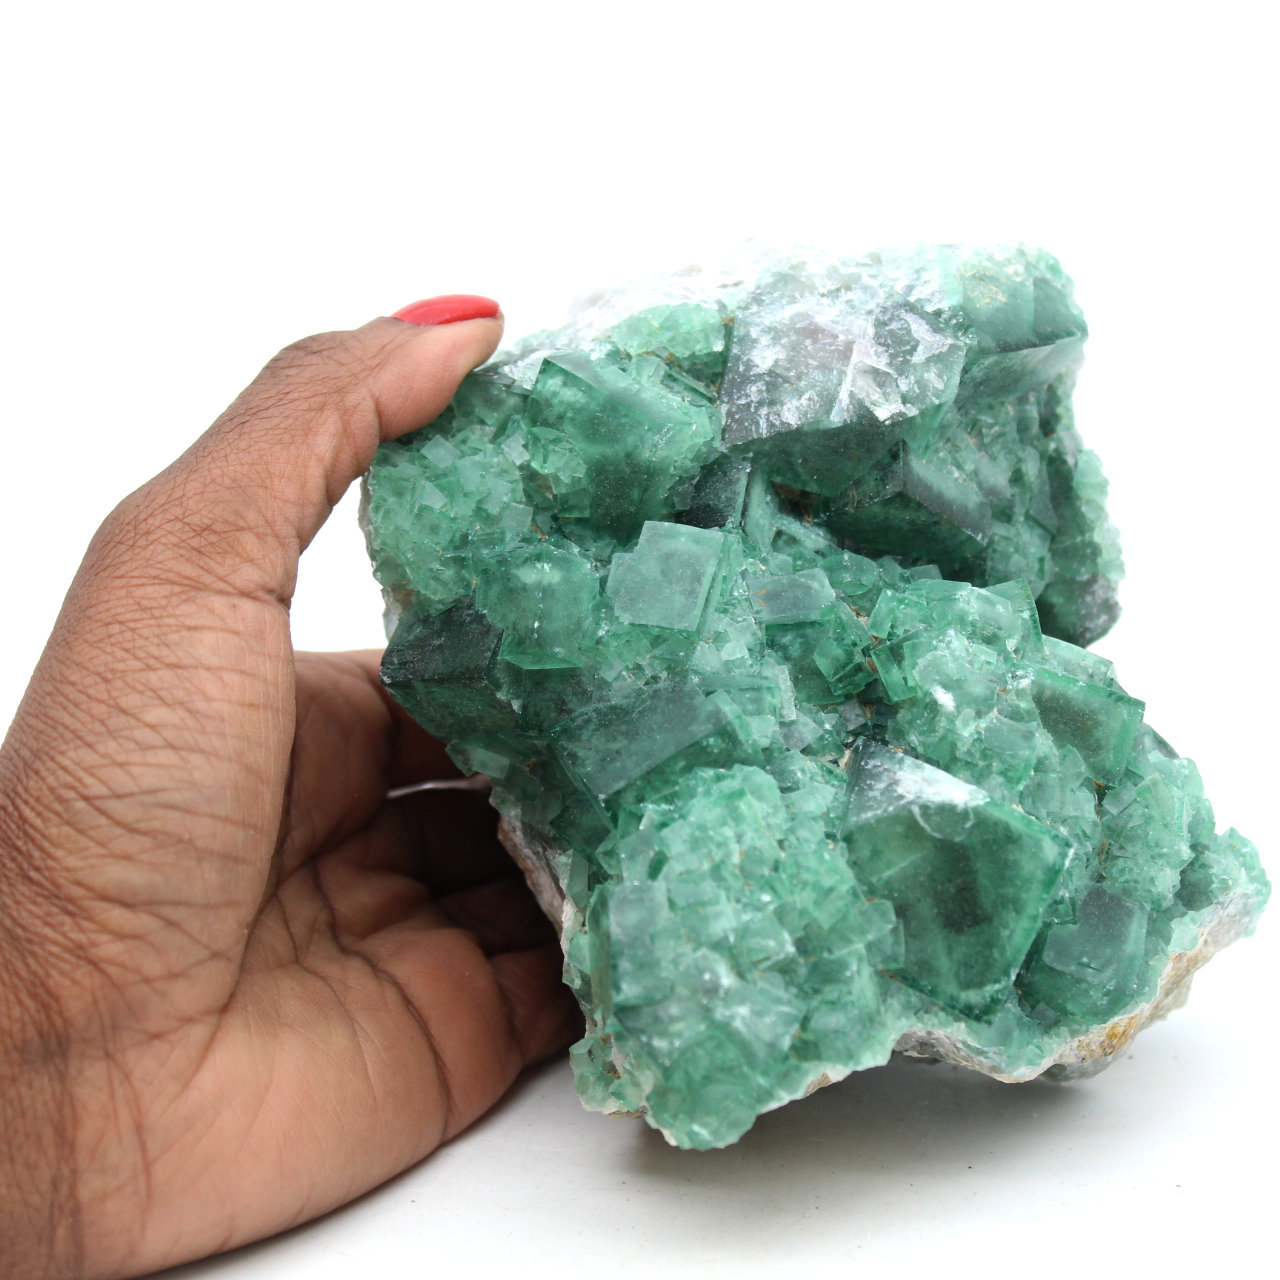 Kristallisierter natürlicher grüner Fluorit 1,5 Kilo